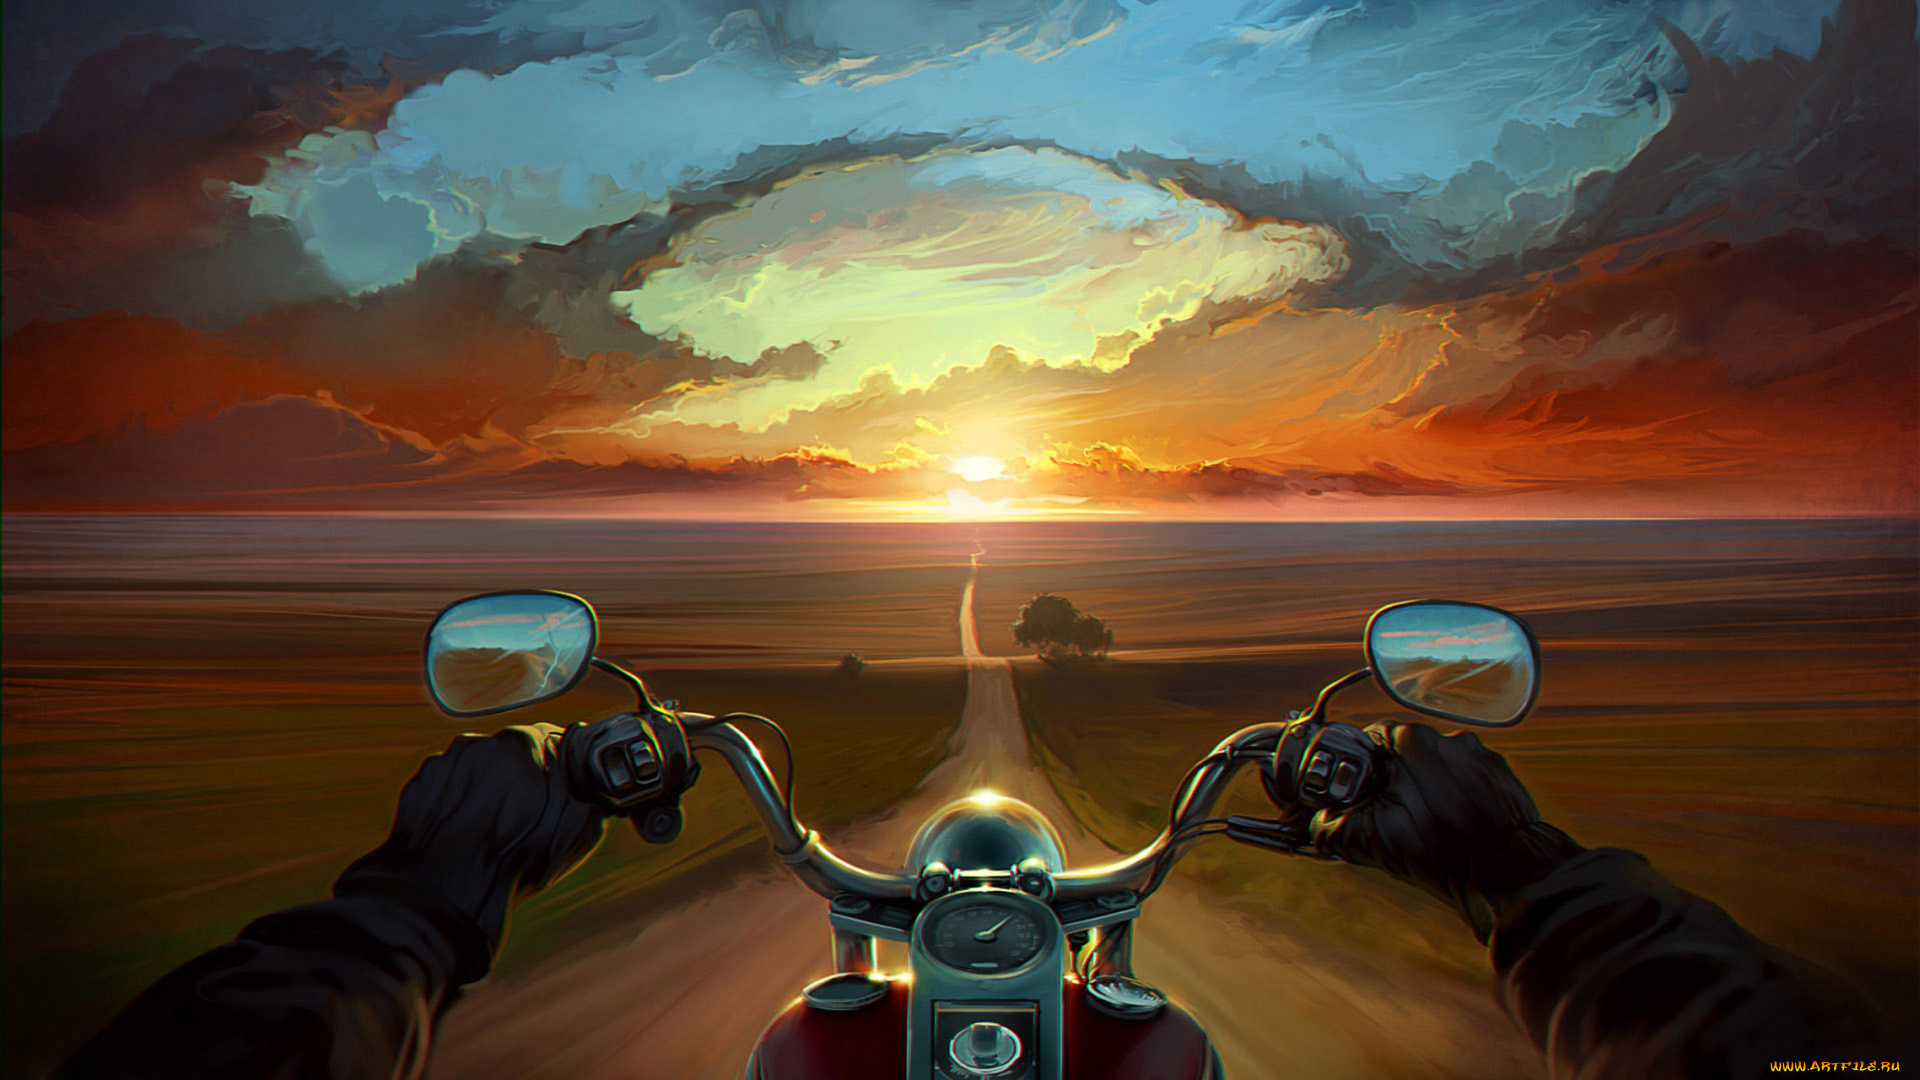 рисованное, природа, дорога, закат, мотоцикл, солнце, тучи, вечер